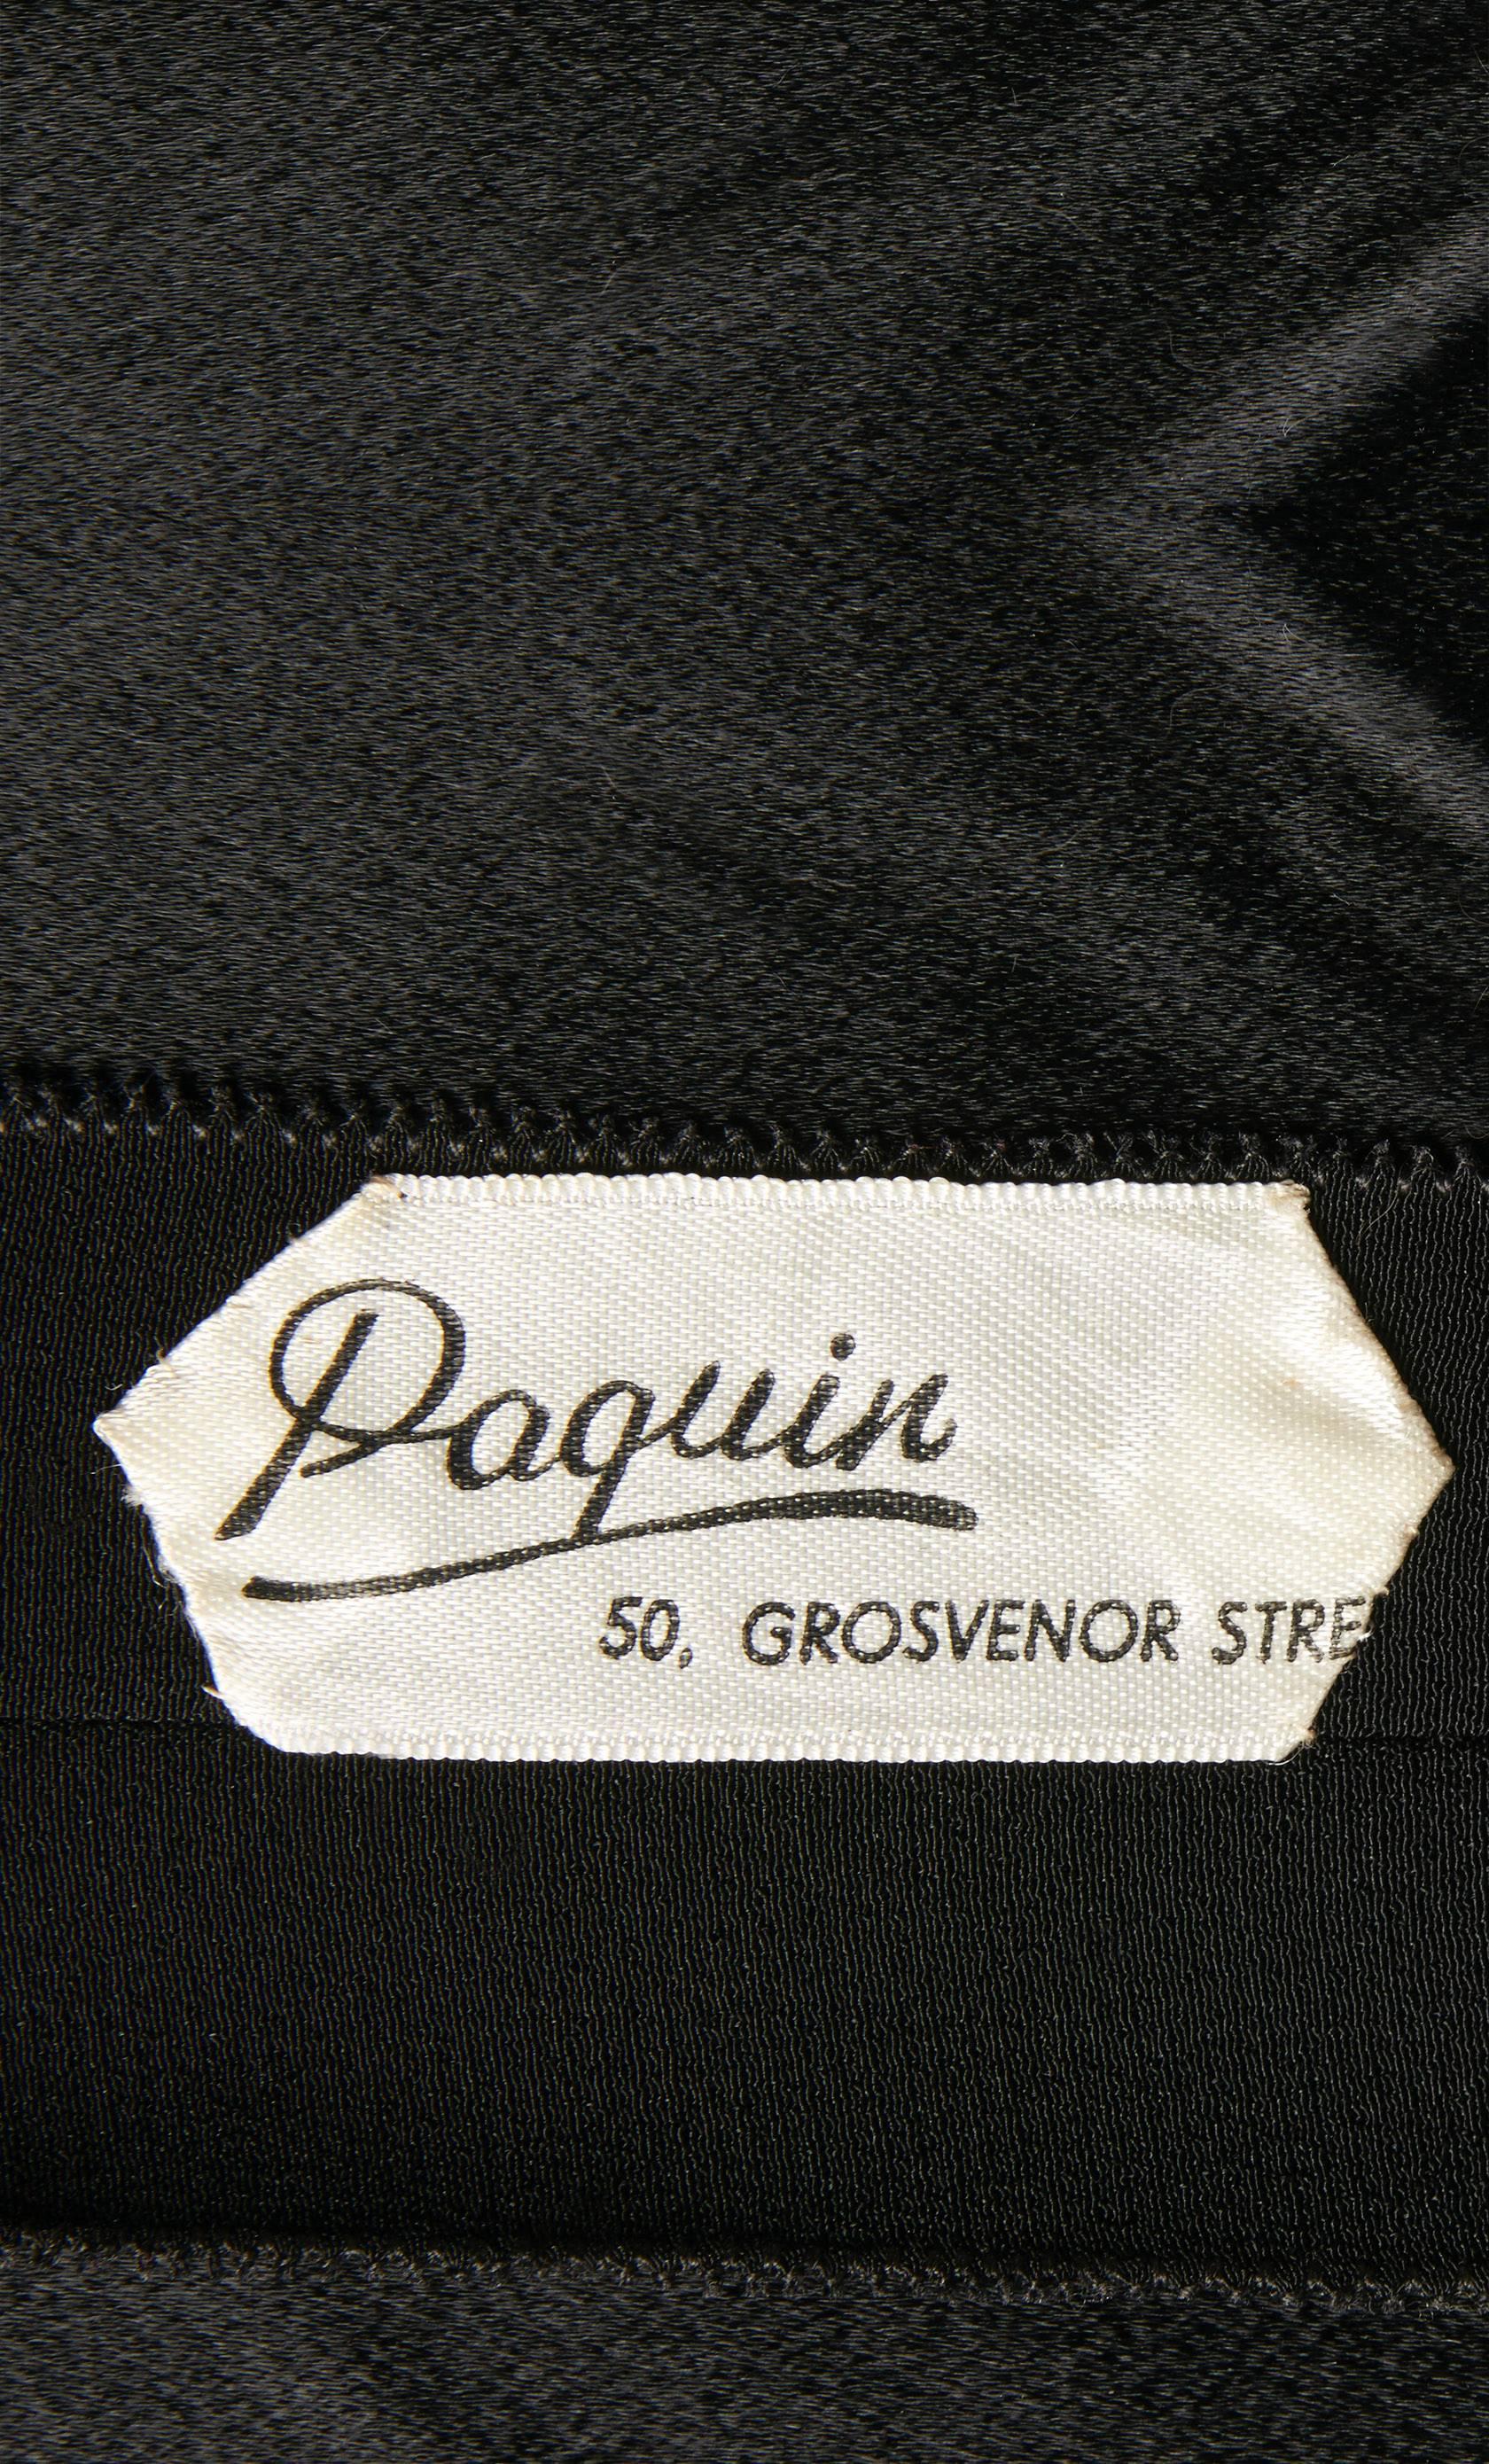 Women's Paquin Haute couture black dress, circa 1960